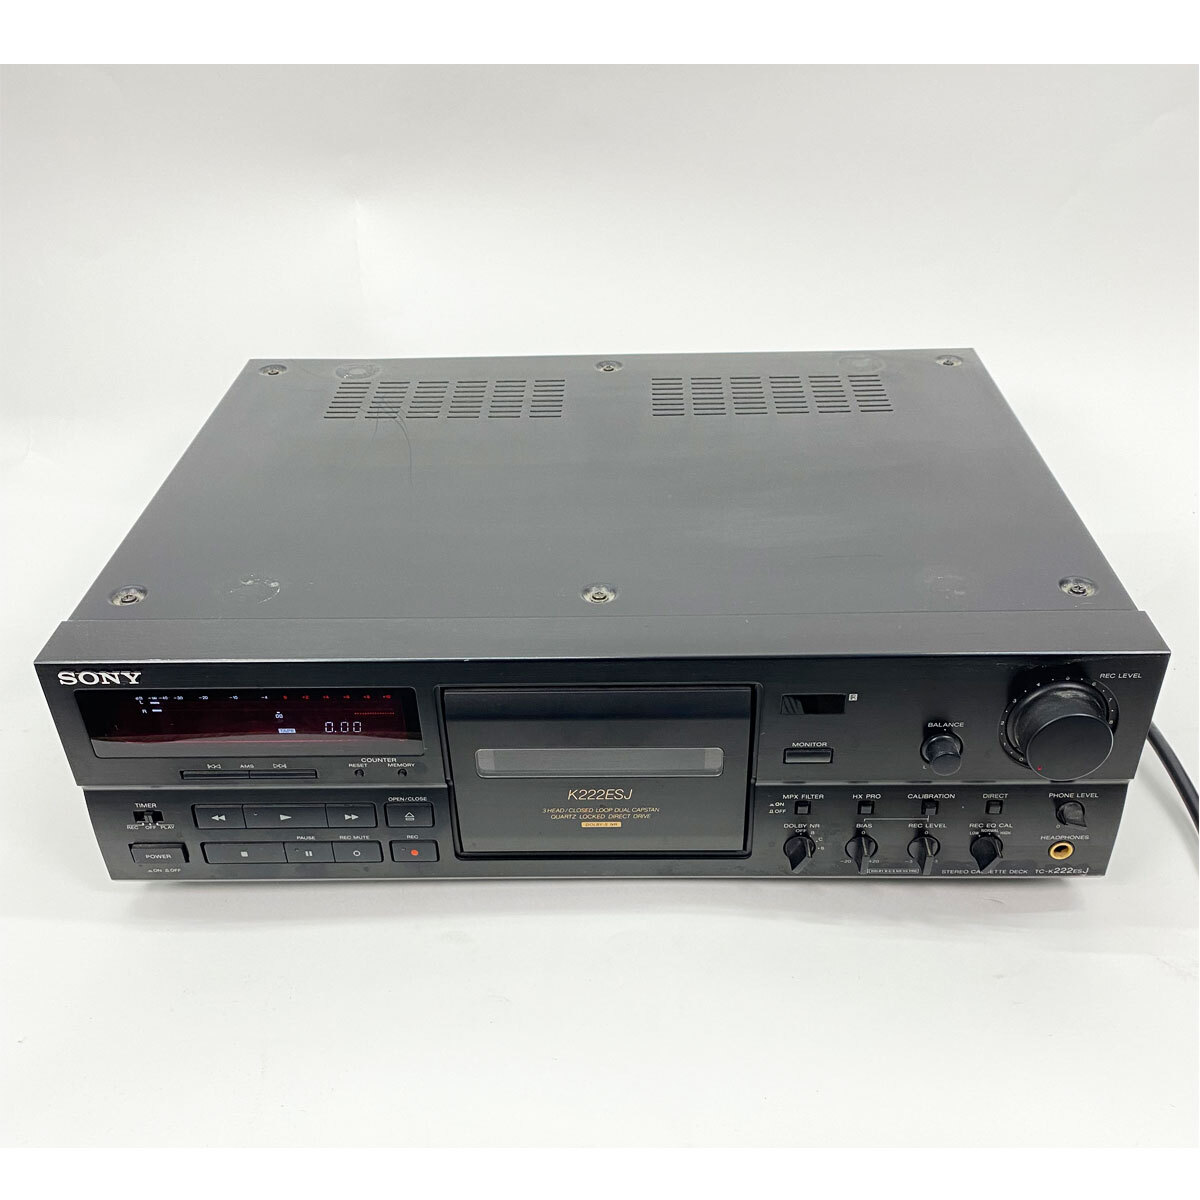 ソニー SONY ステレオカセットデッキ TC-K222ESJ 音響機器 通電確認済み 現状品 中古品 nn0101 083_画像1